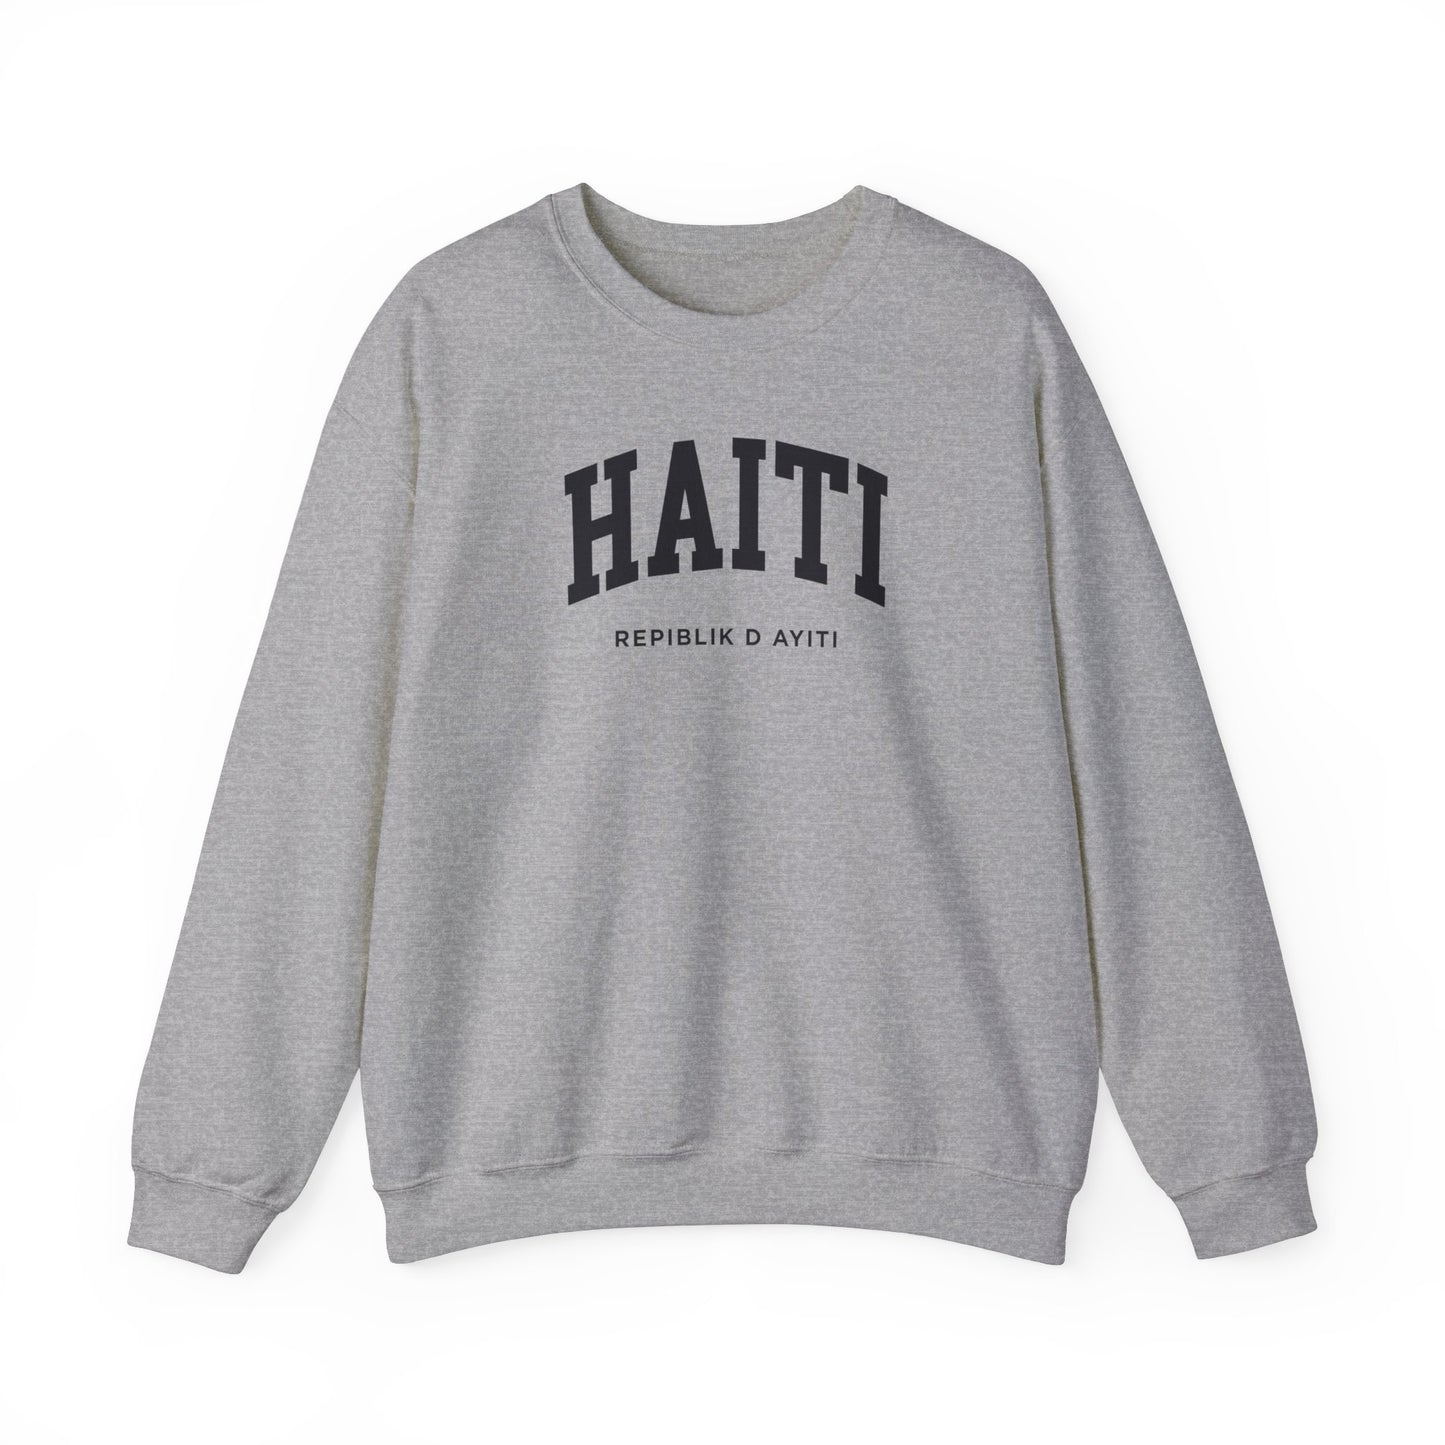 Haiti Sweatshirt